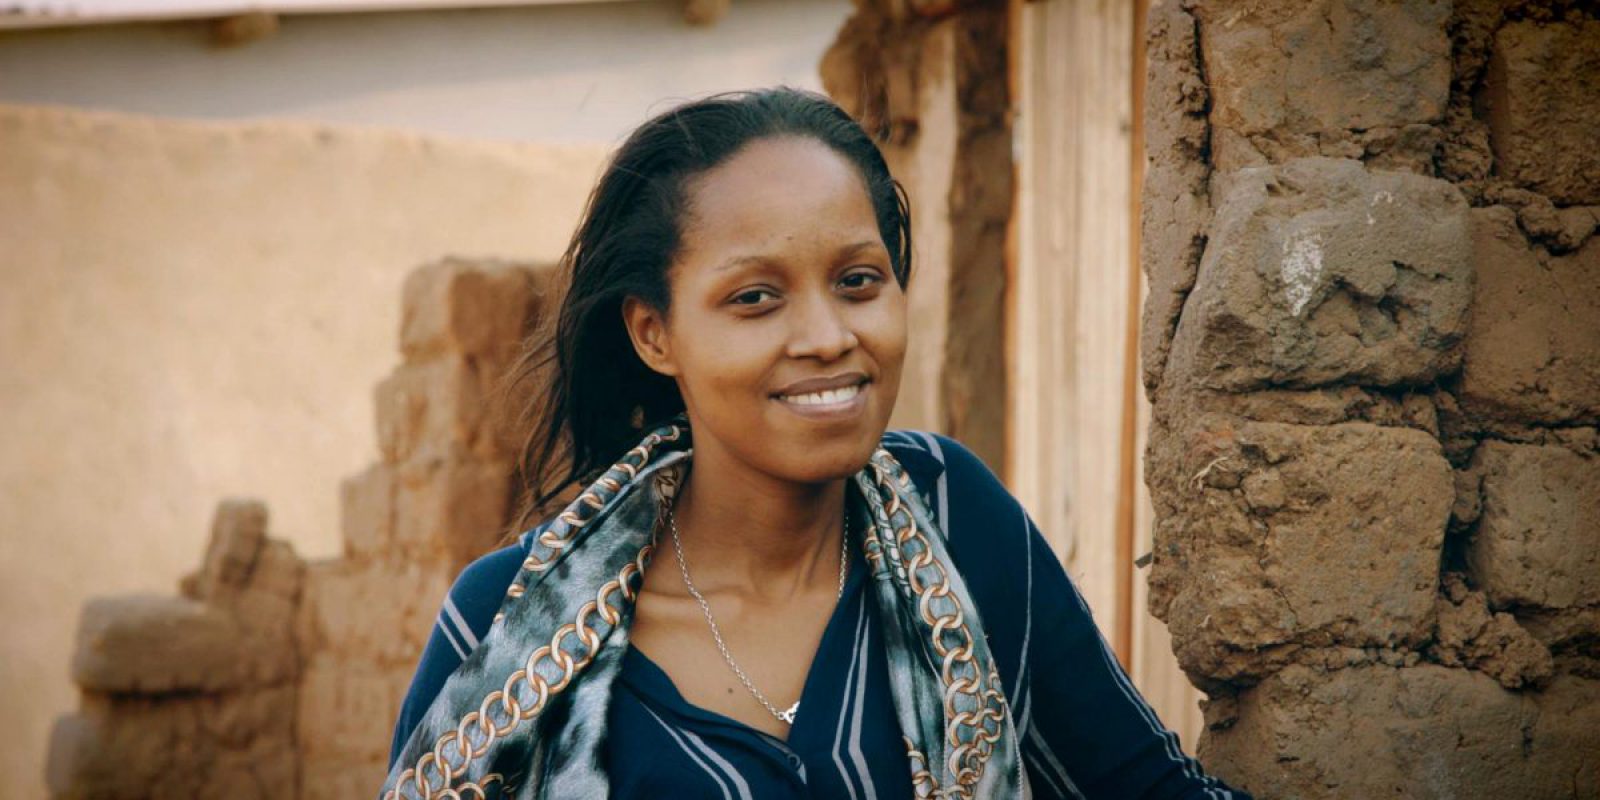 Gahizi, the refugee freelancer inspiring hope